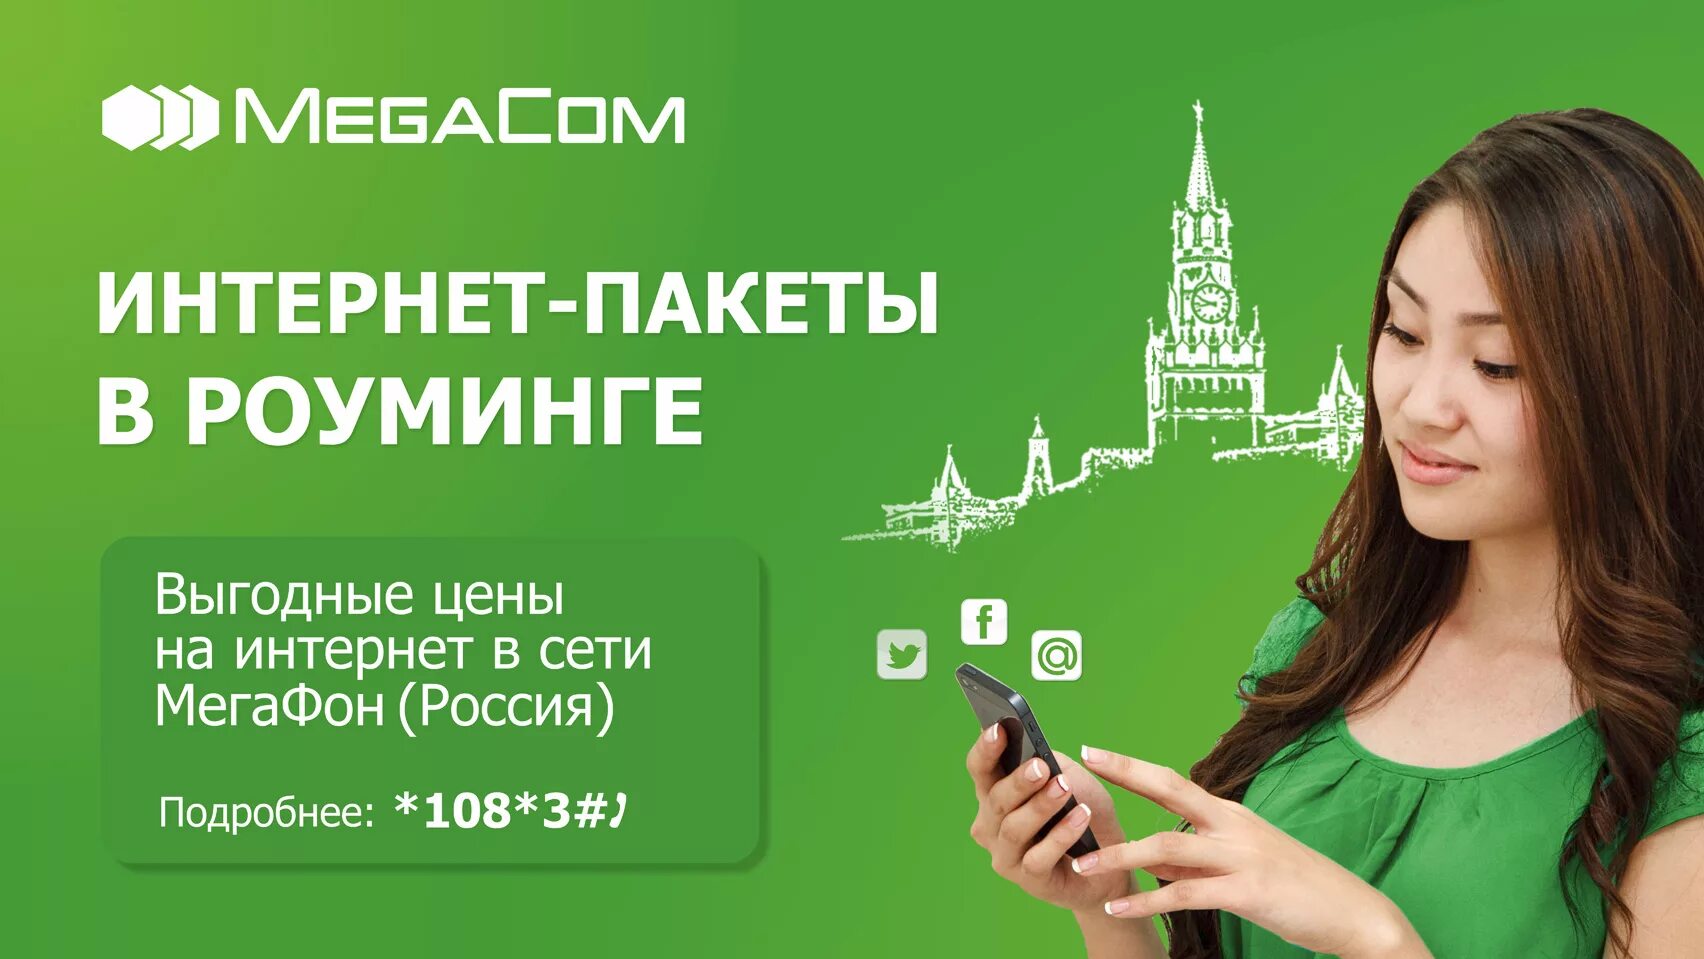 Мобильный интернет в беларуси. Интернет роуминг. Роуминг megafon. МЕГАФОН интернет в роуминге. Роуминг картинки.